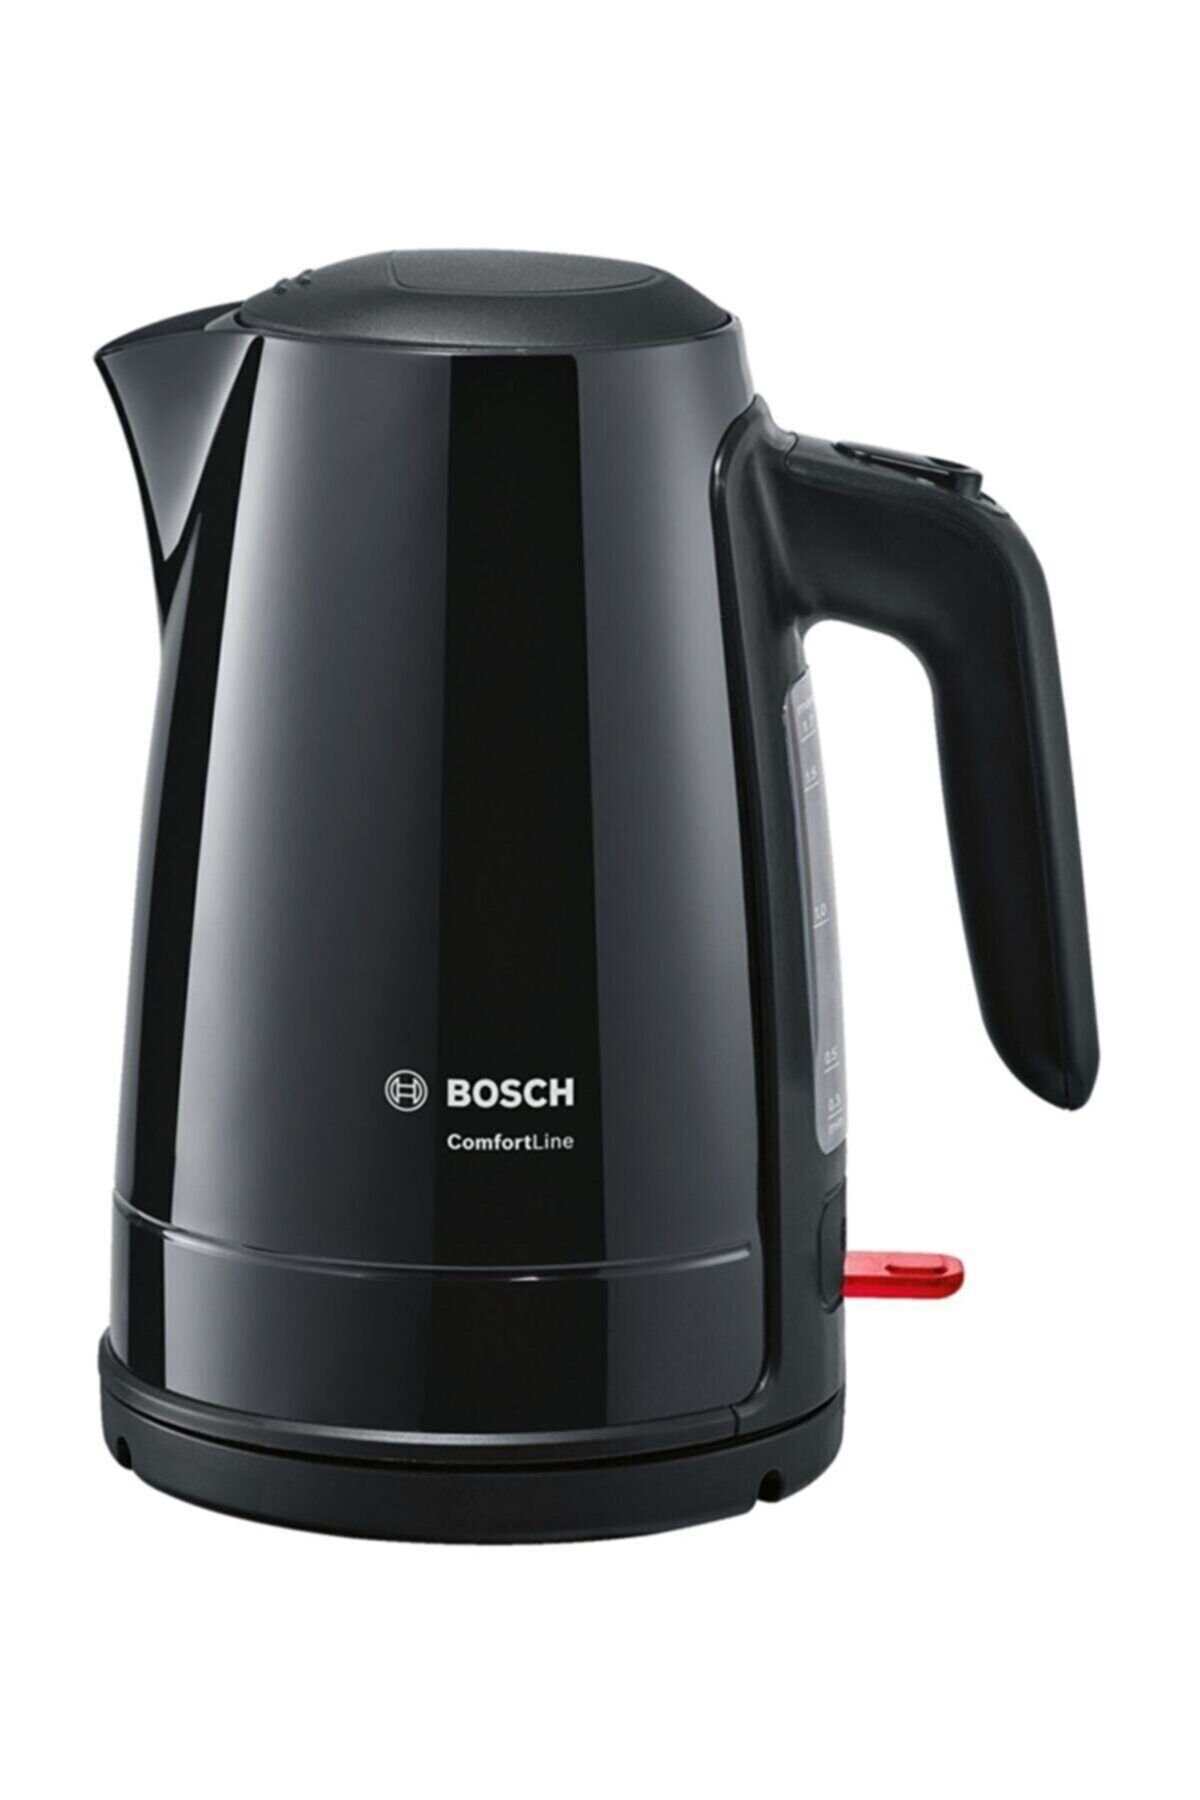 Bosch Twk6a013 Comfortline 1.7 L Siyah